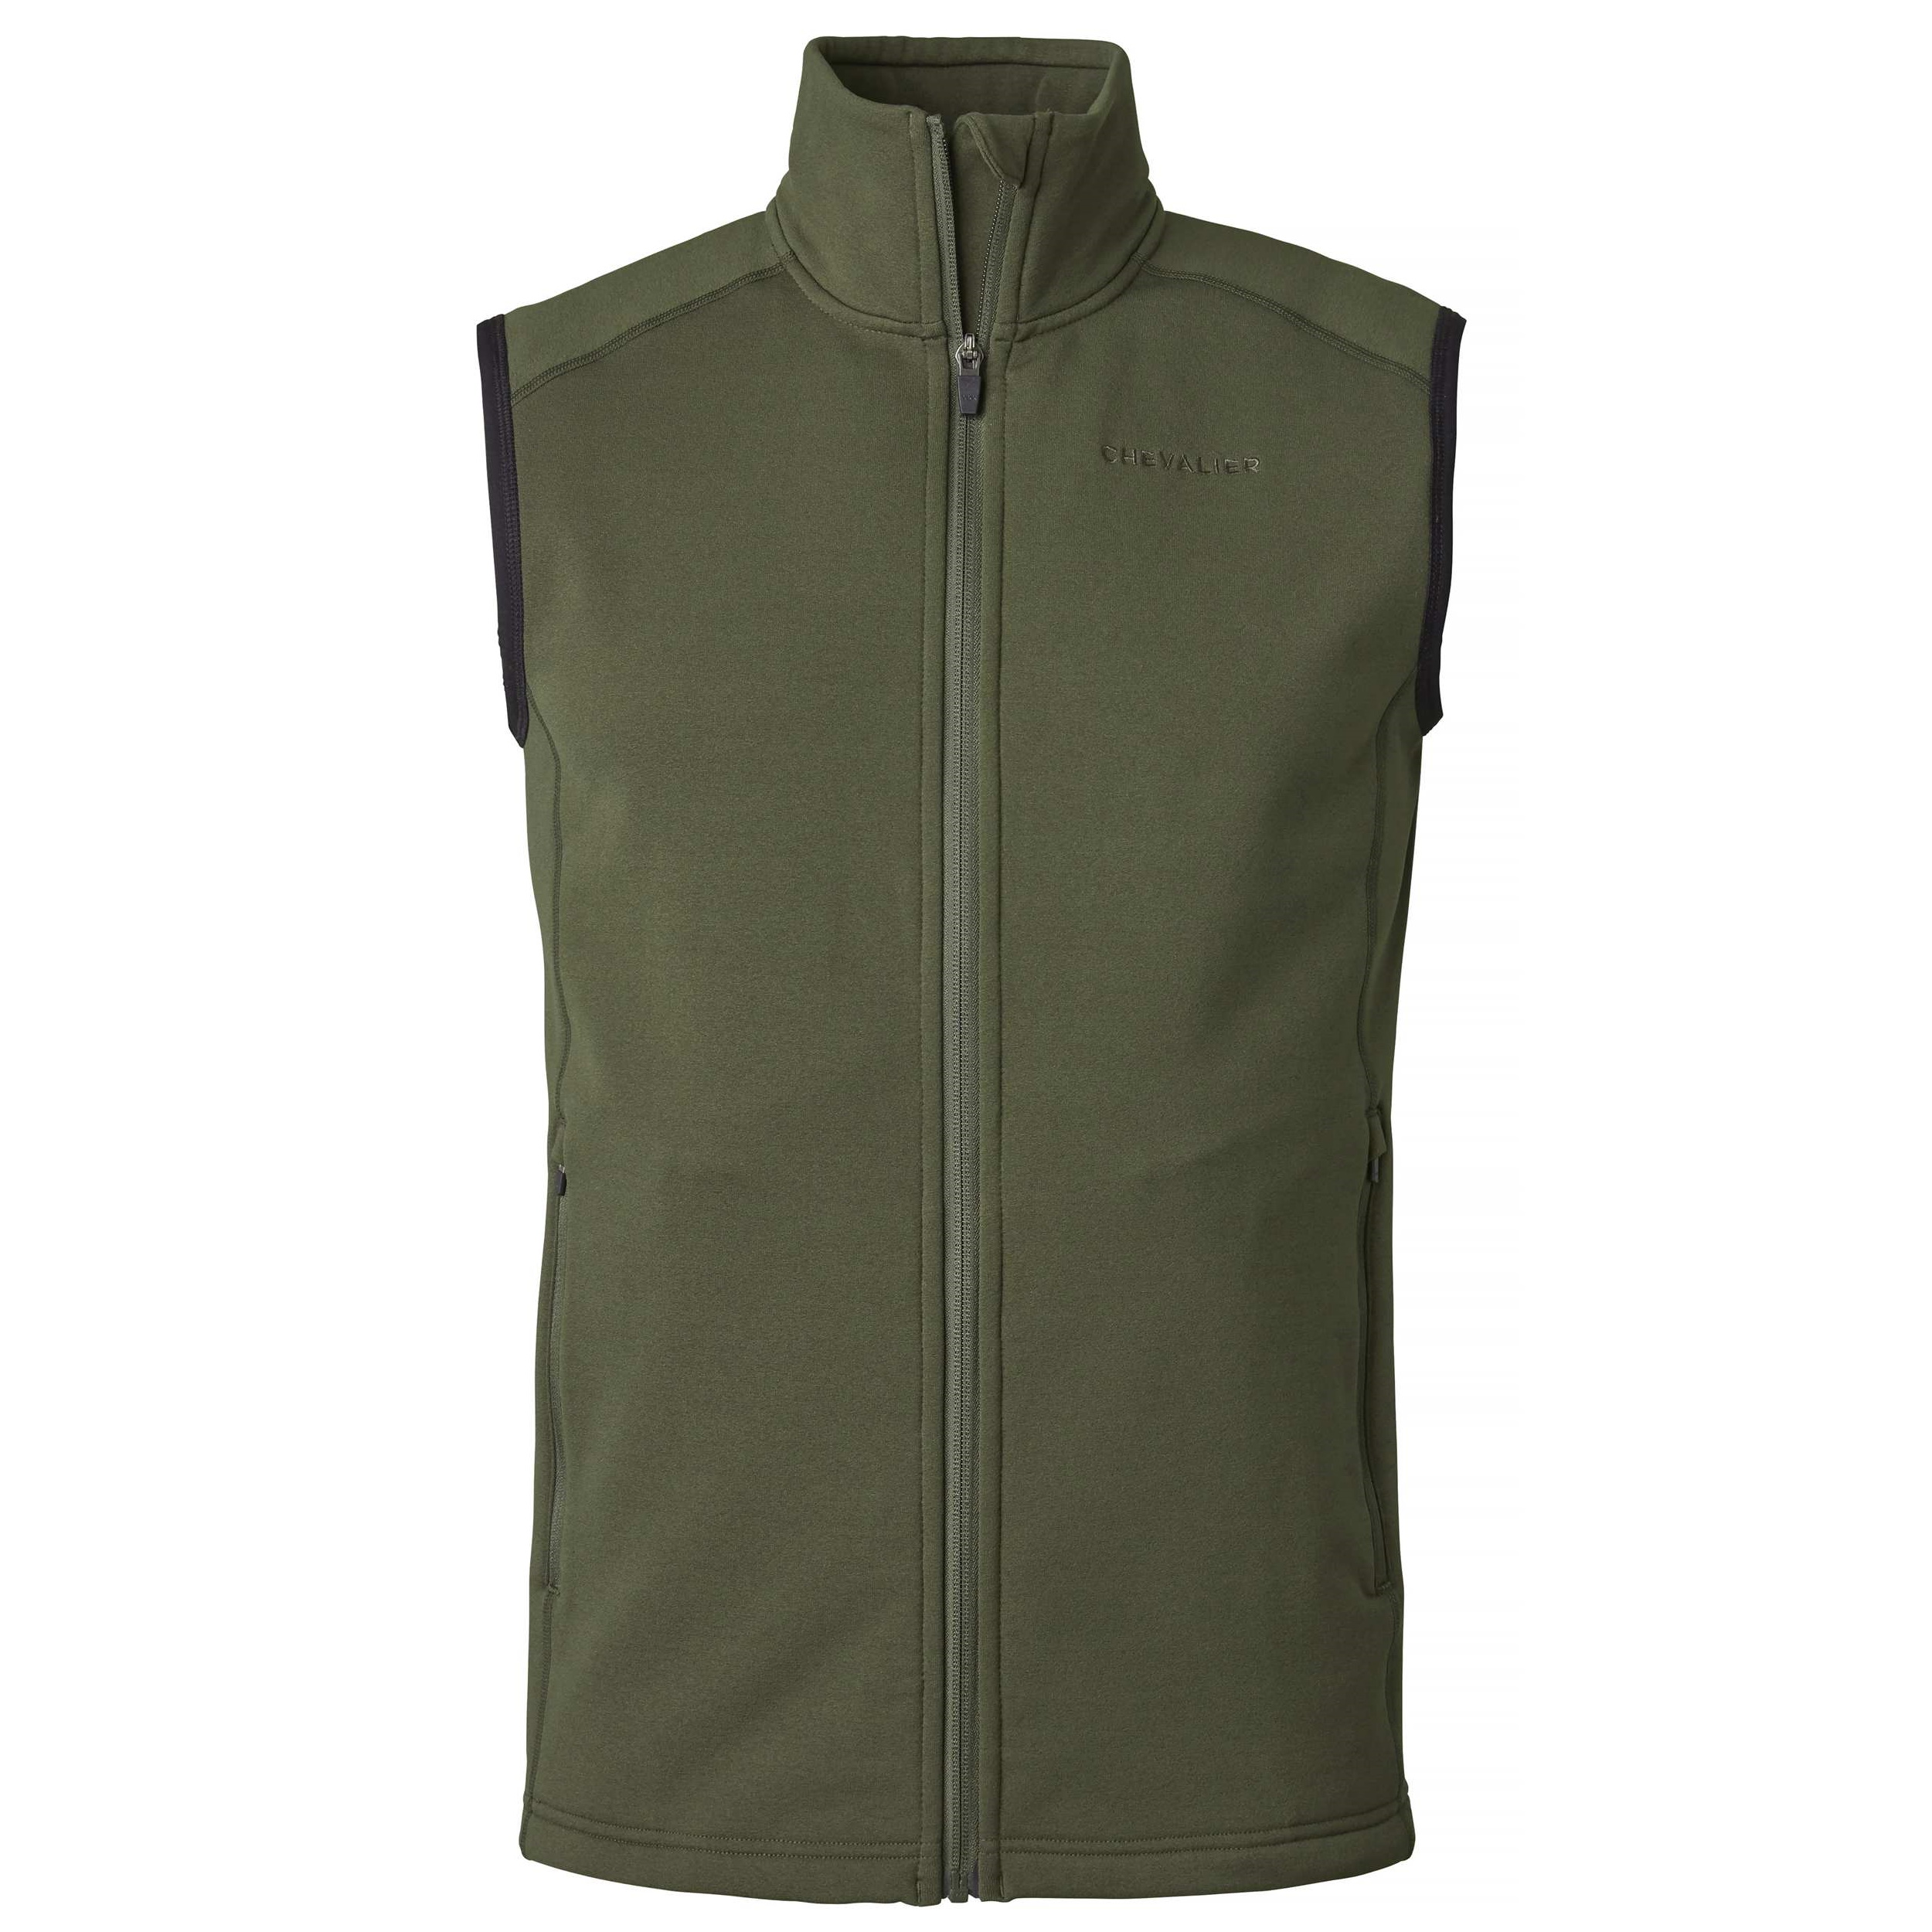 Men's Lenzie Fleece Vest Dark Green